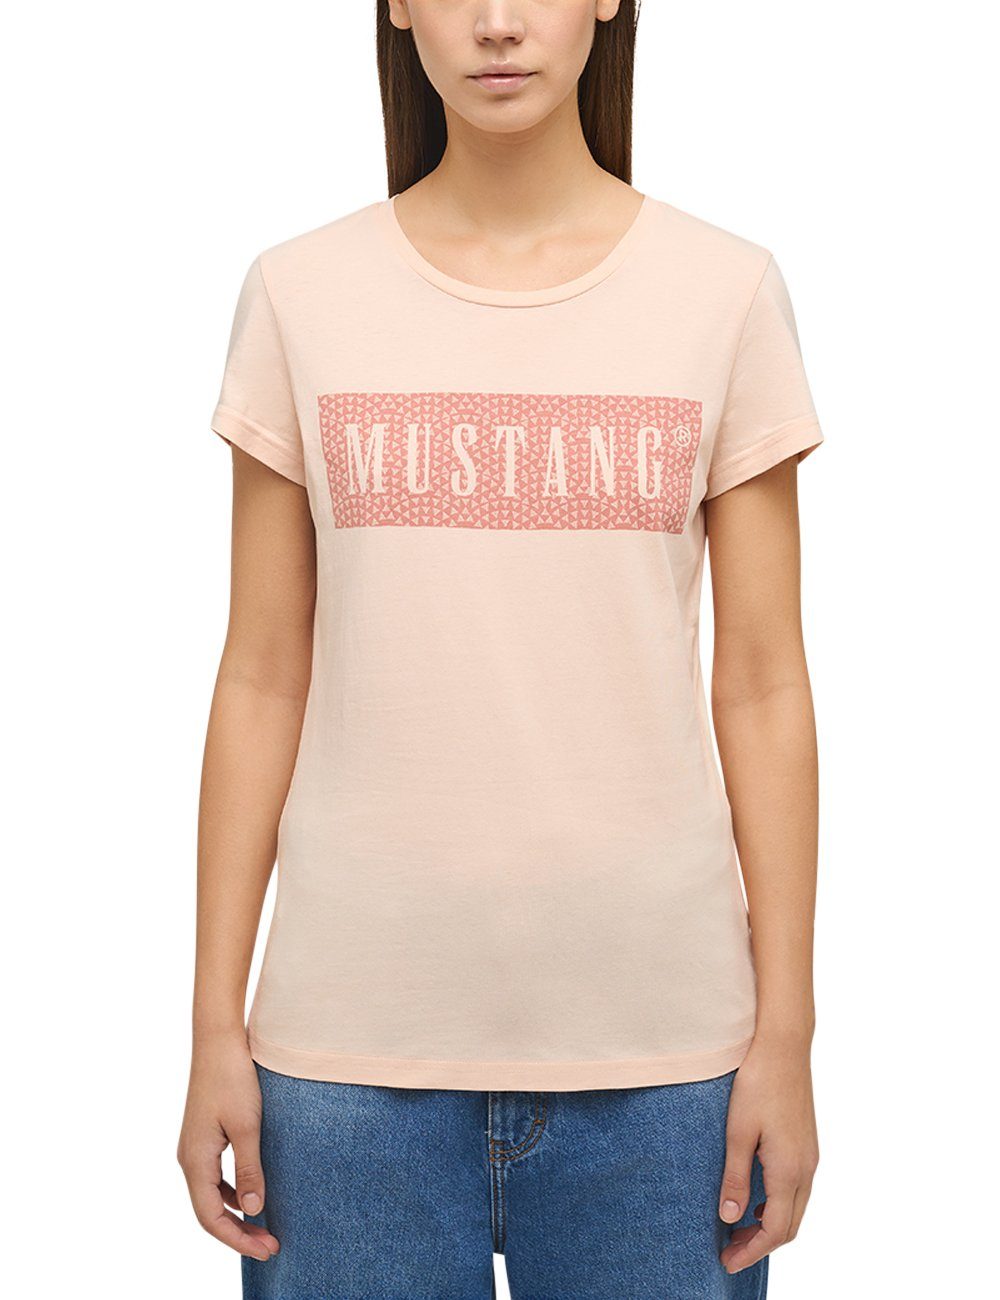 Kurzarmshirt Mustang MUSTANG T-Shirt hellrosa Print-Shirt